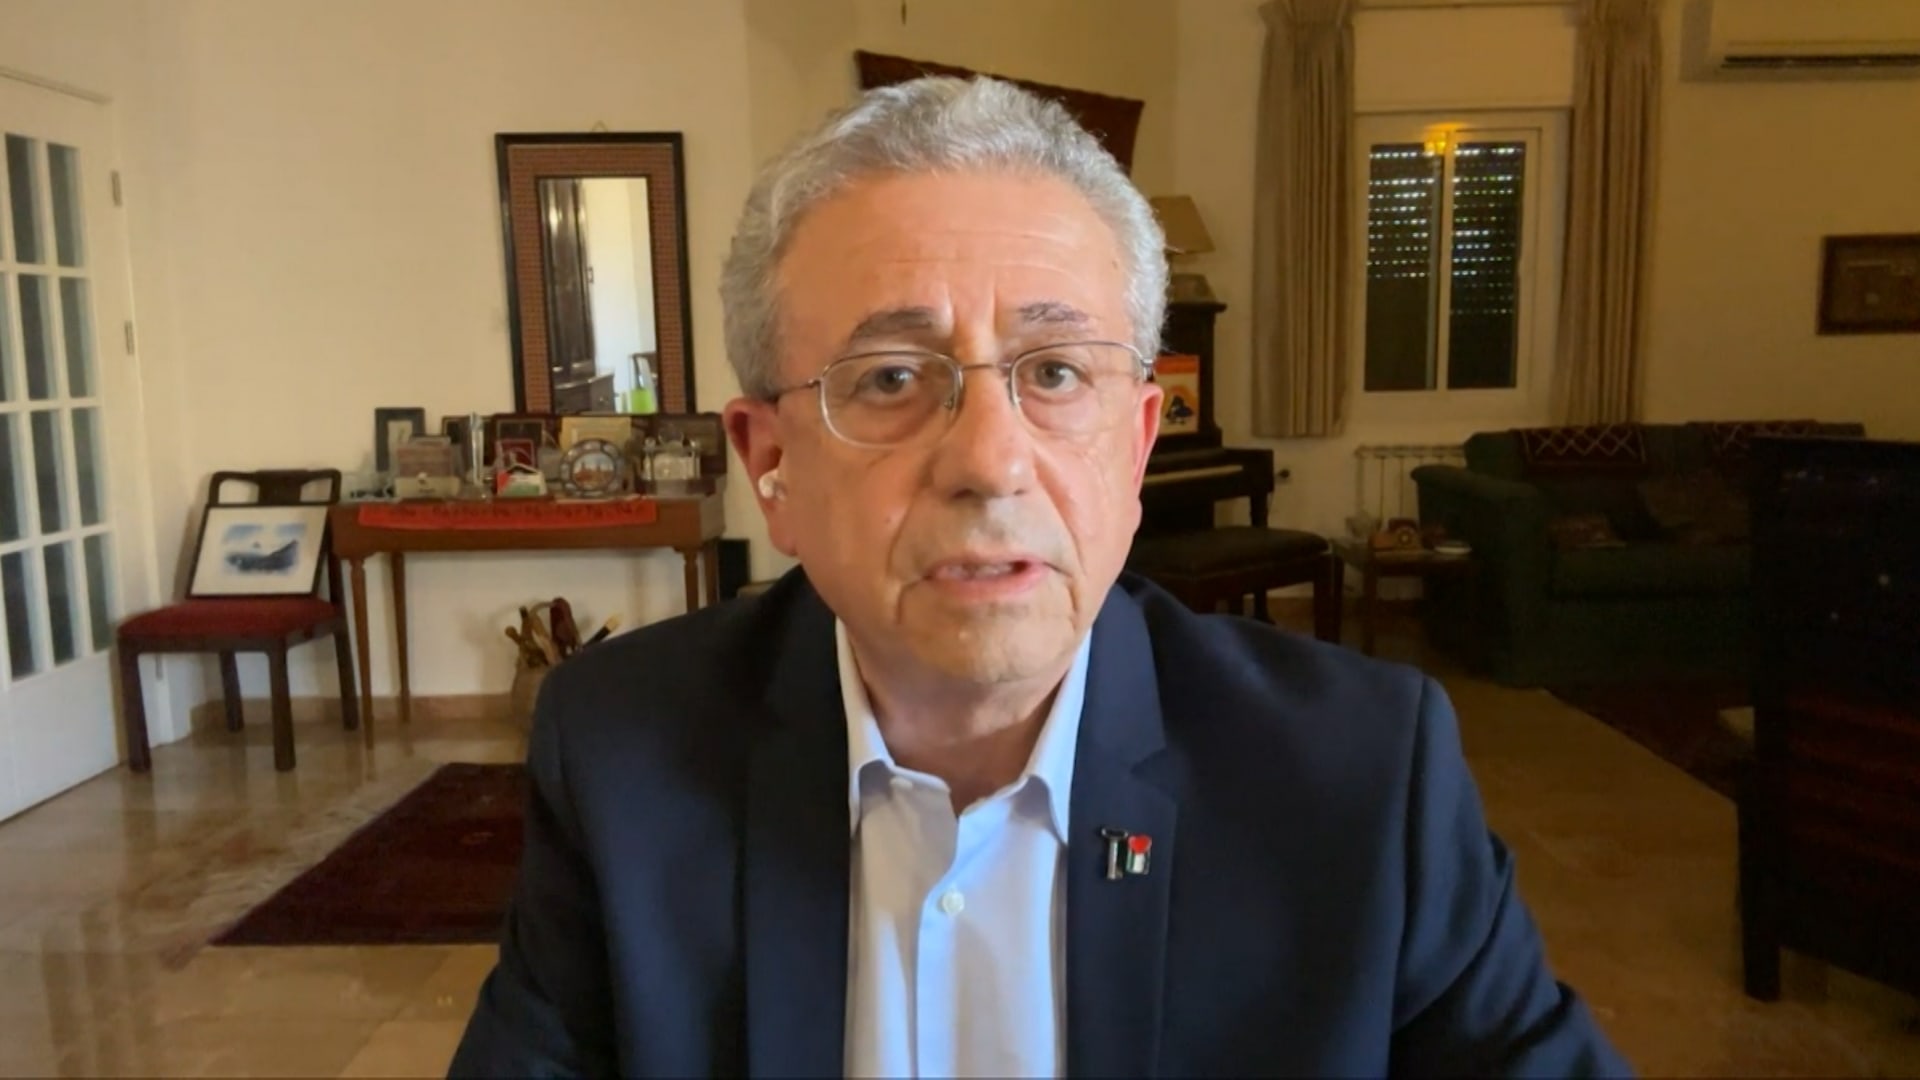 د. مصطفى البرغوثي : يجب الضغط على نتنياهو لوقف حرب الإبادة الجماعية
